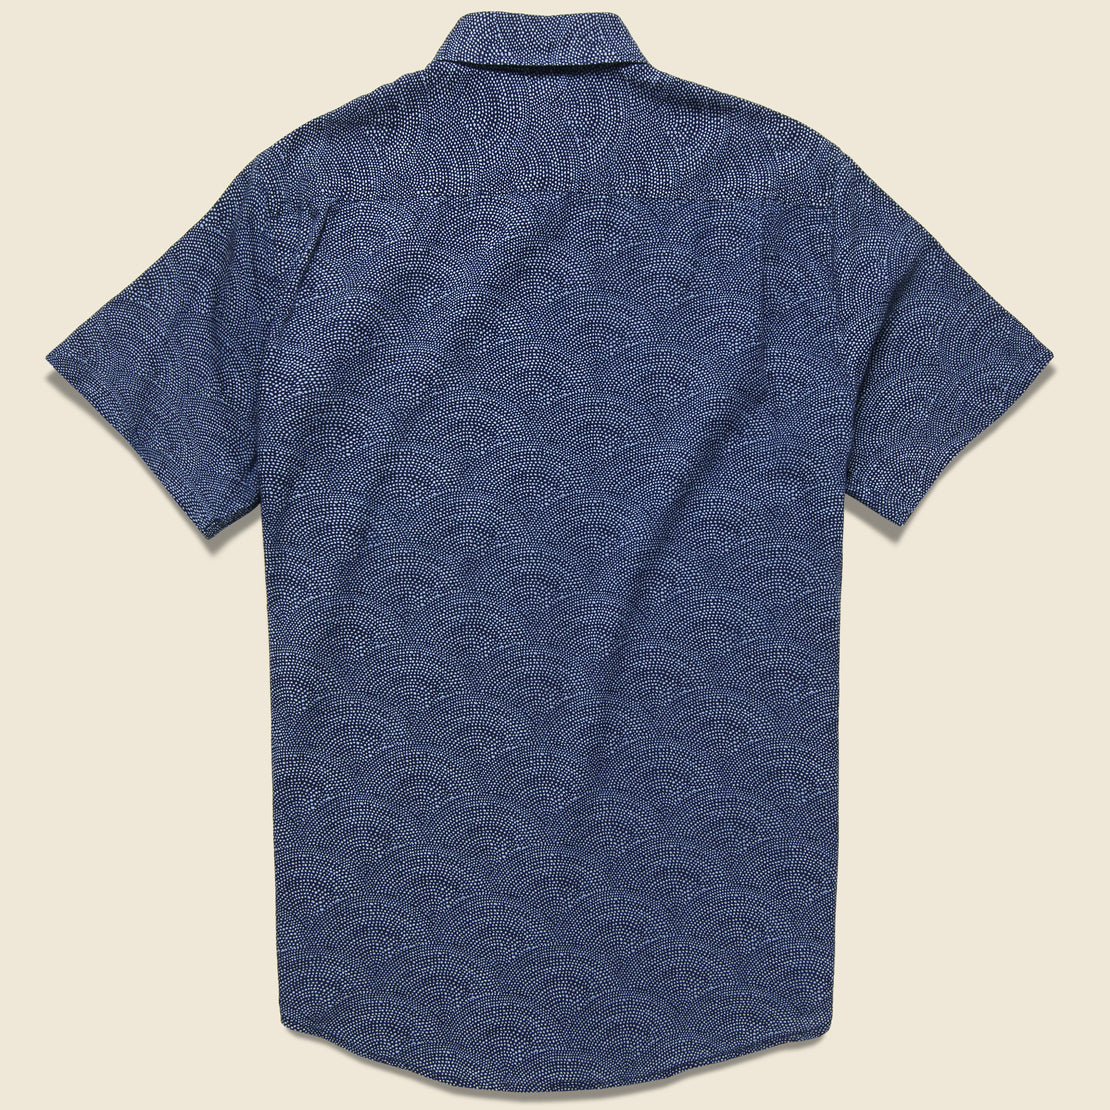 Faherty - S/S Coast Shirt, SS19